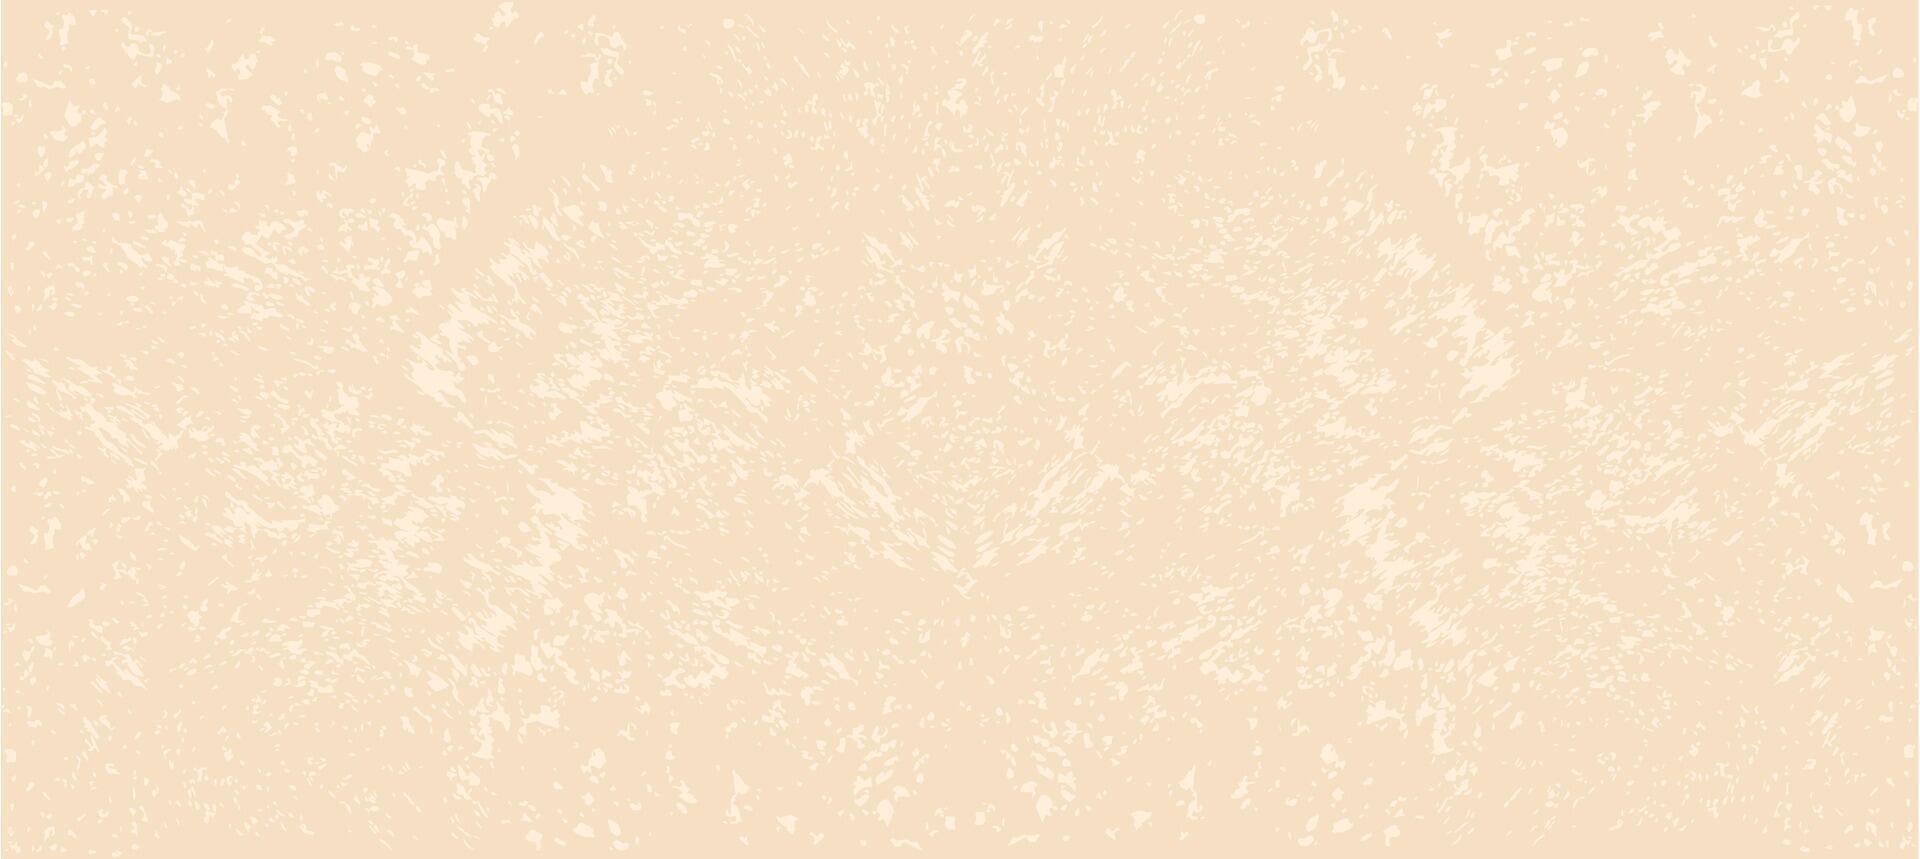 rijst- papier. vector voorraad illustratie. wijnoogst grunge achtergrond met dots en spikkels. minimalistisch korrelig eierschaal papier textuur.